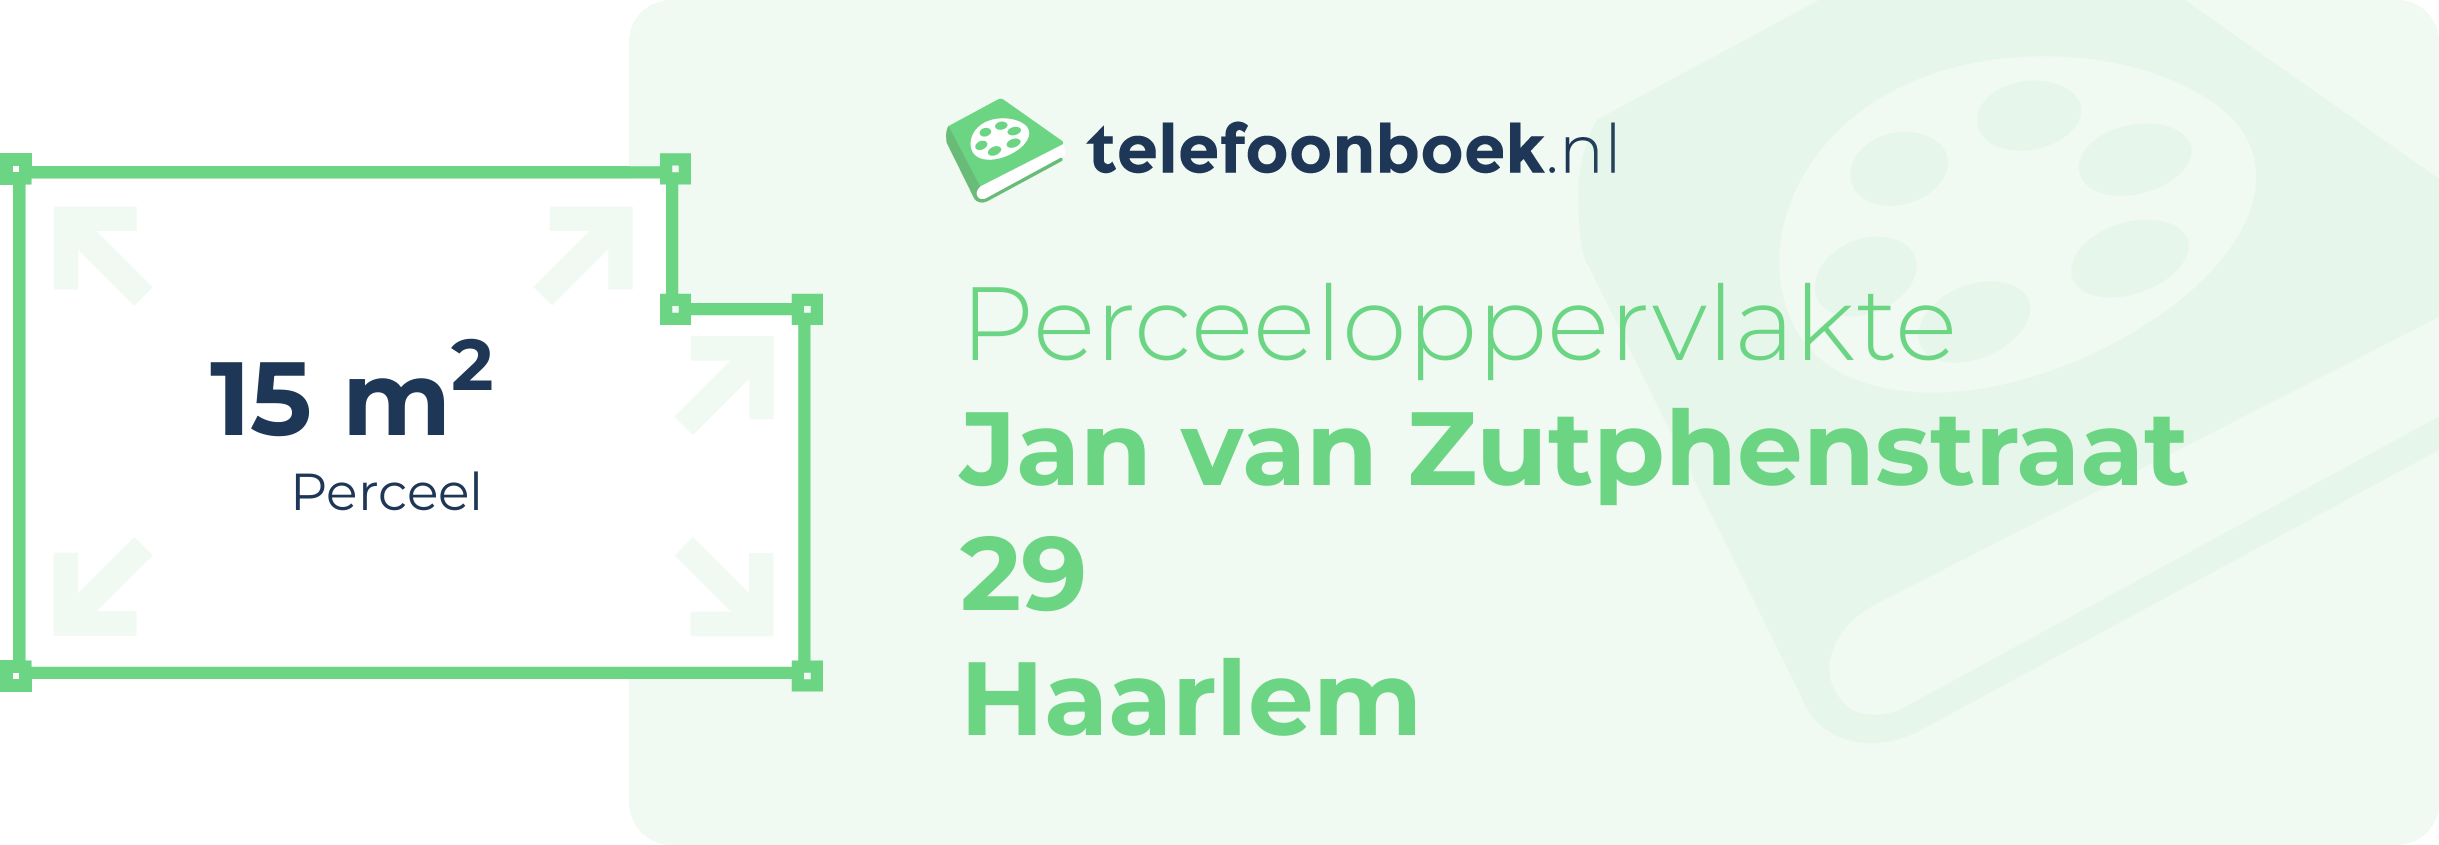 Perceeloppervlakte Jan Van Zutphenstraat 29 Haarlem